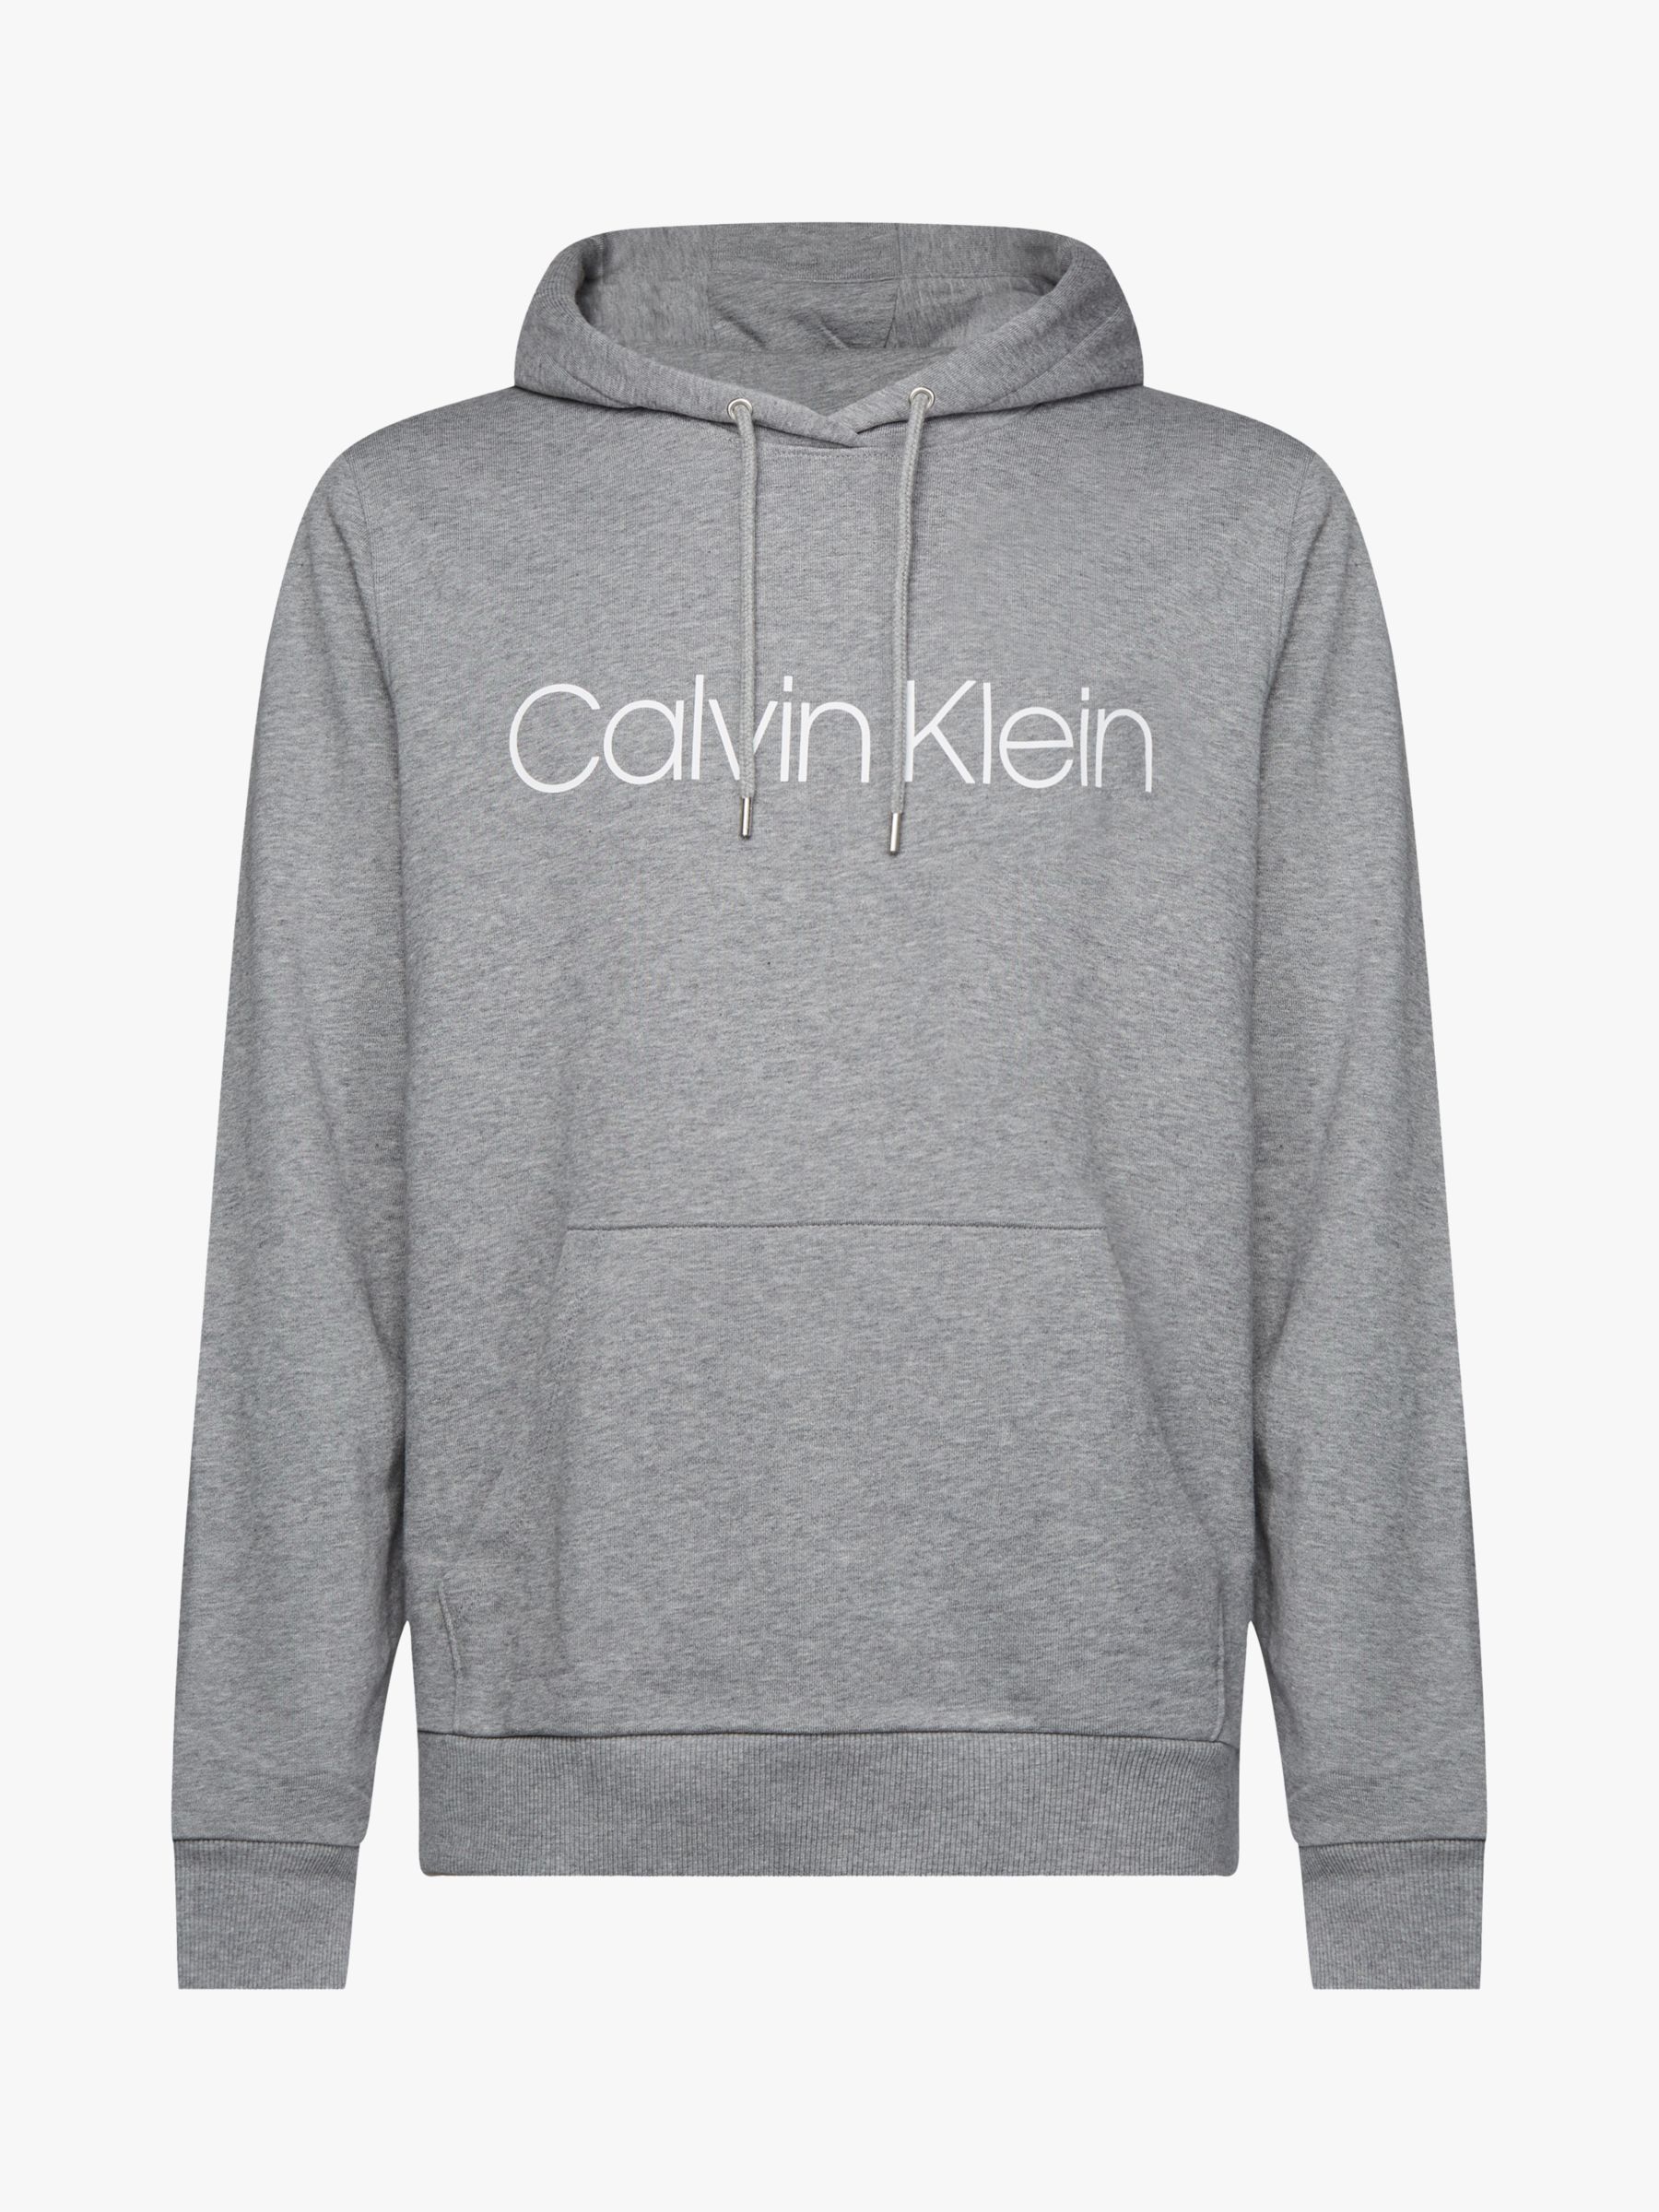 Calvin Klein Organic Cotton Logo Hoodie, Mid Grey Heather at John Lewis ...